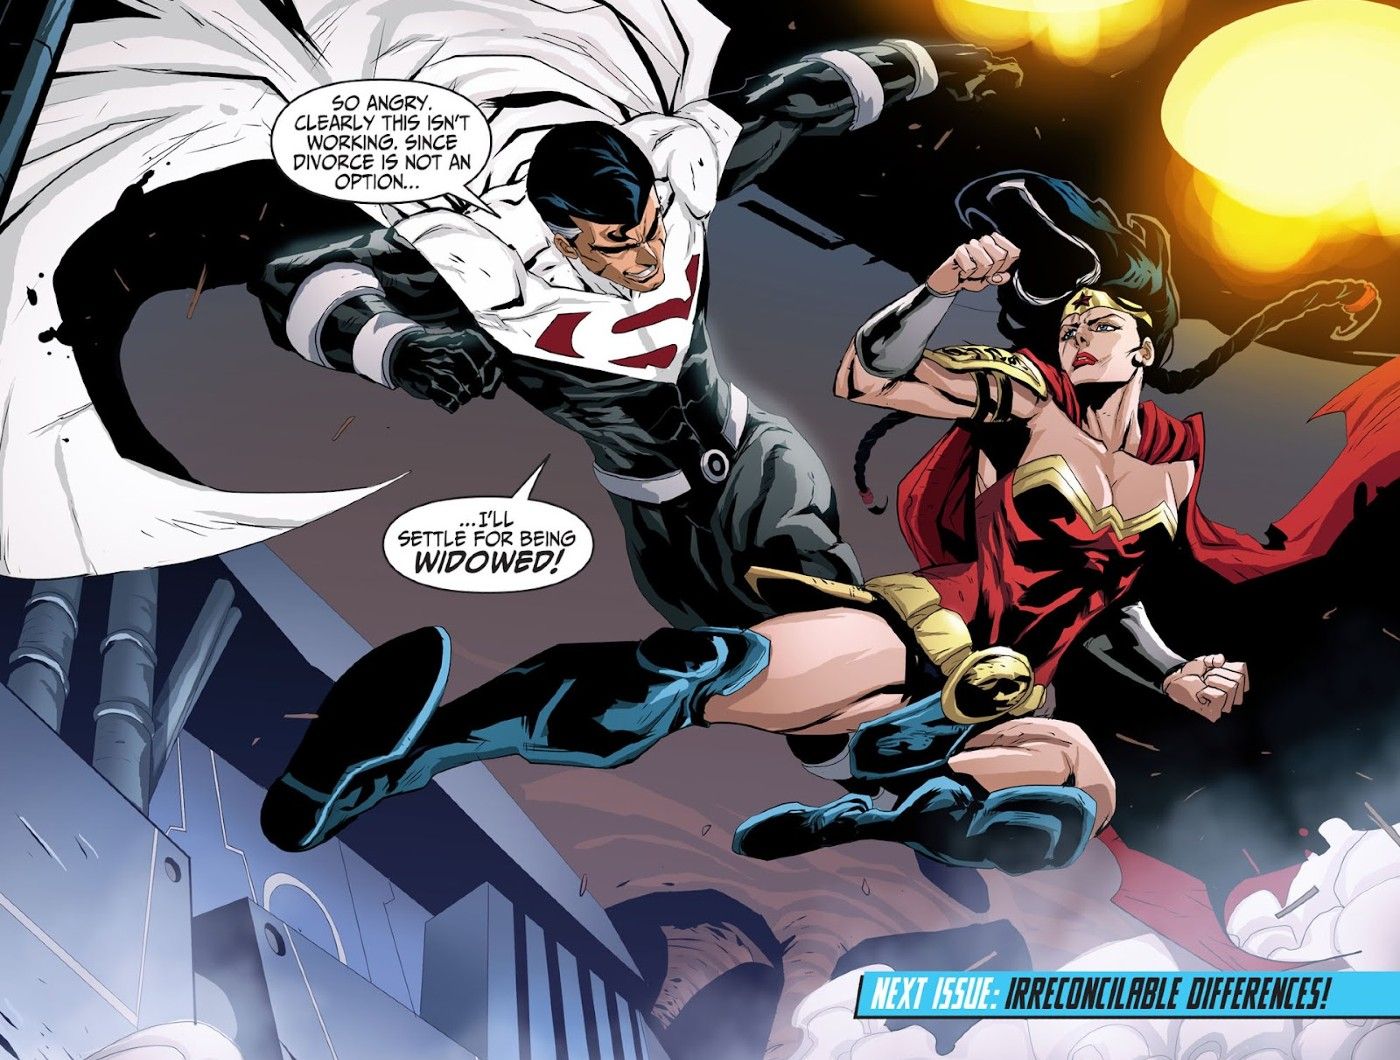 Çizgi roman paneli: DCAU Wonder Woman, Lord Superman ile evlilikleri konusunda alay ederken ona karşı savaşır.